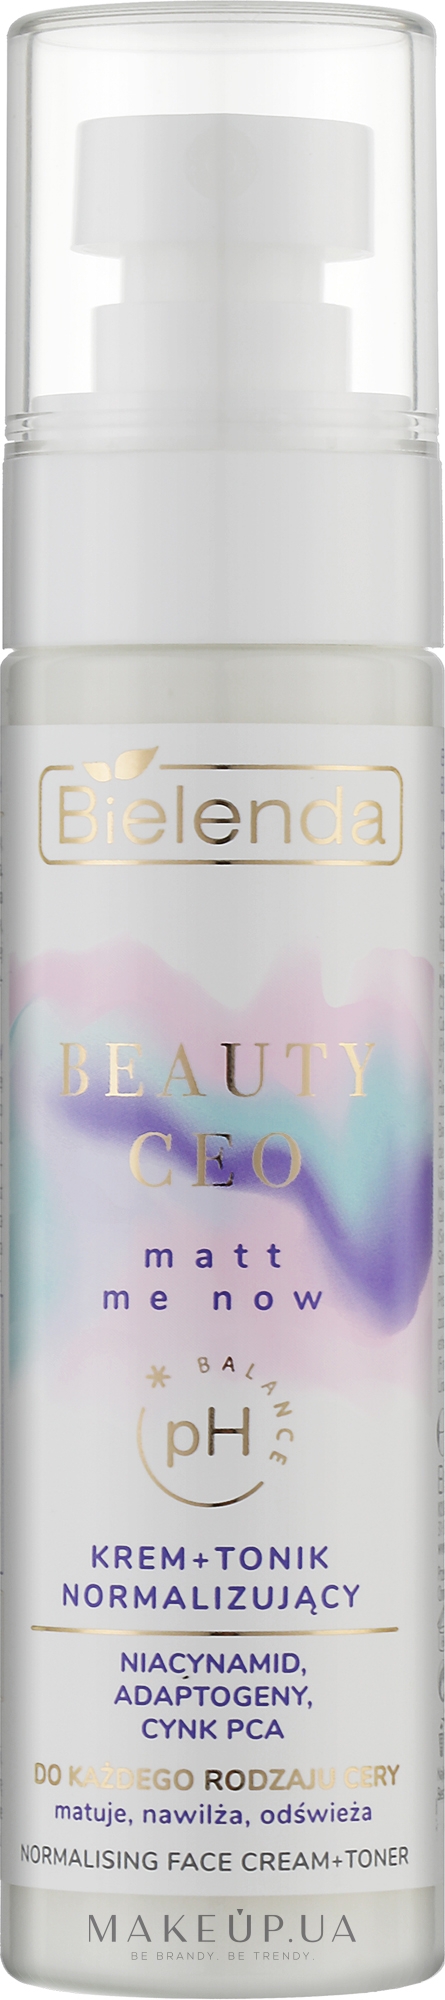 Крем-тонік для обличчя, нормалізувальний - Bielenda Beauty CEO Matt Me Now — фото 75ml